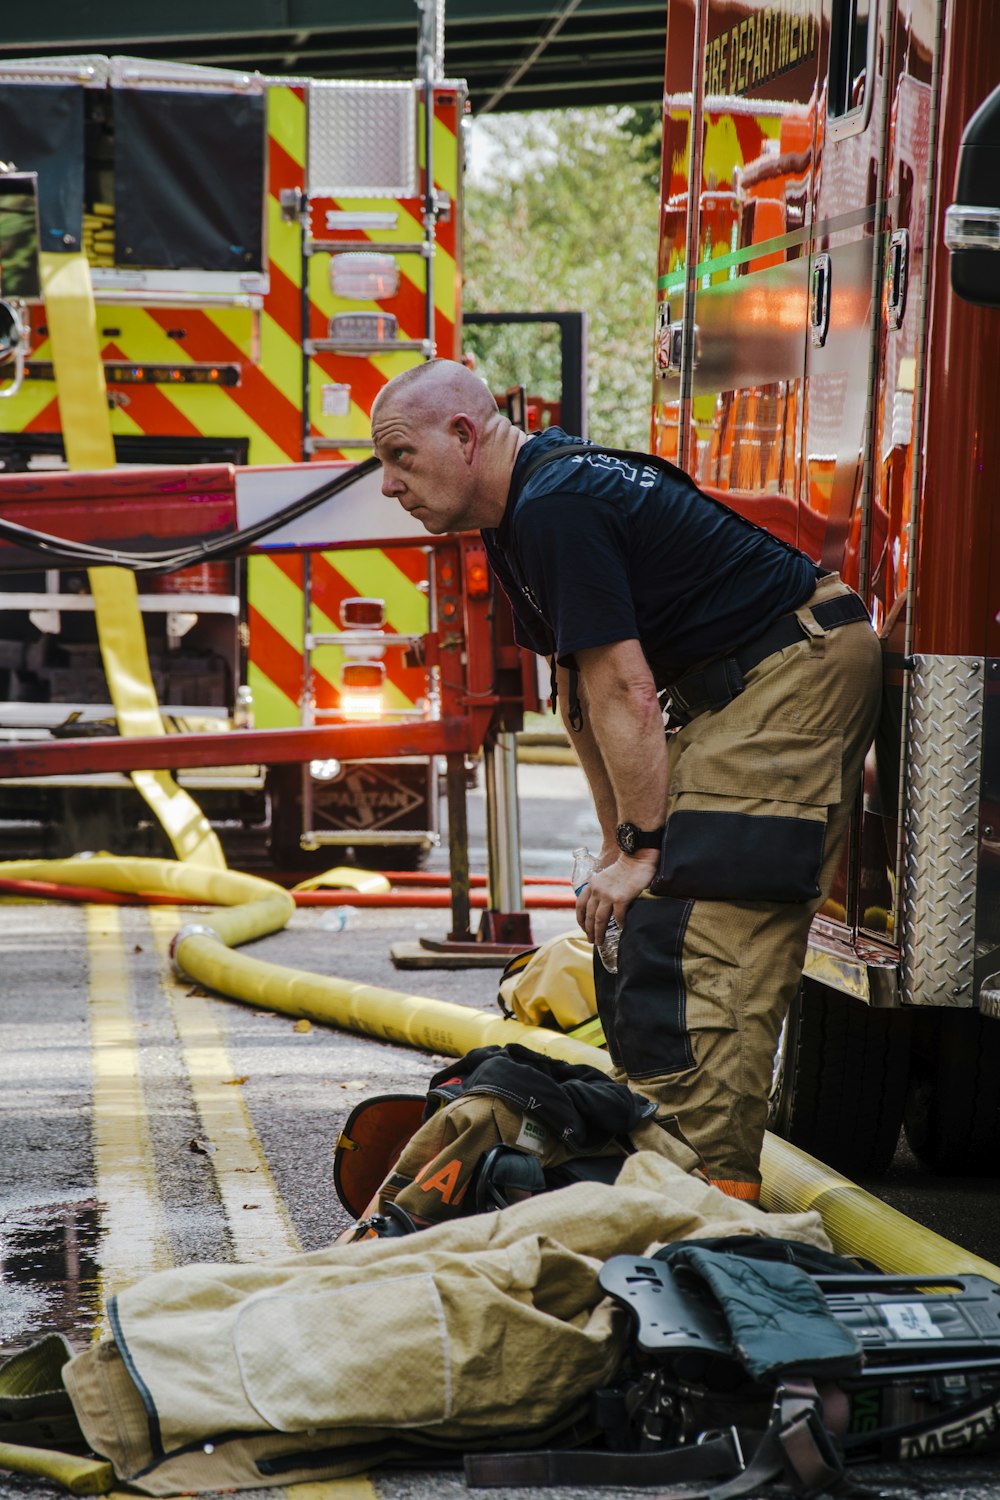 Un pompiere in piedi accanto a una manichetta antincendio